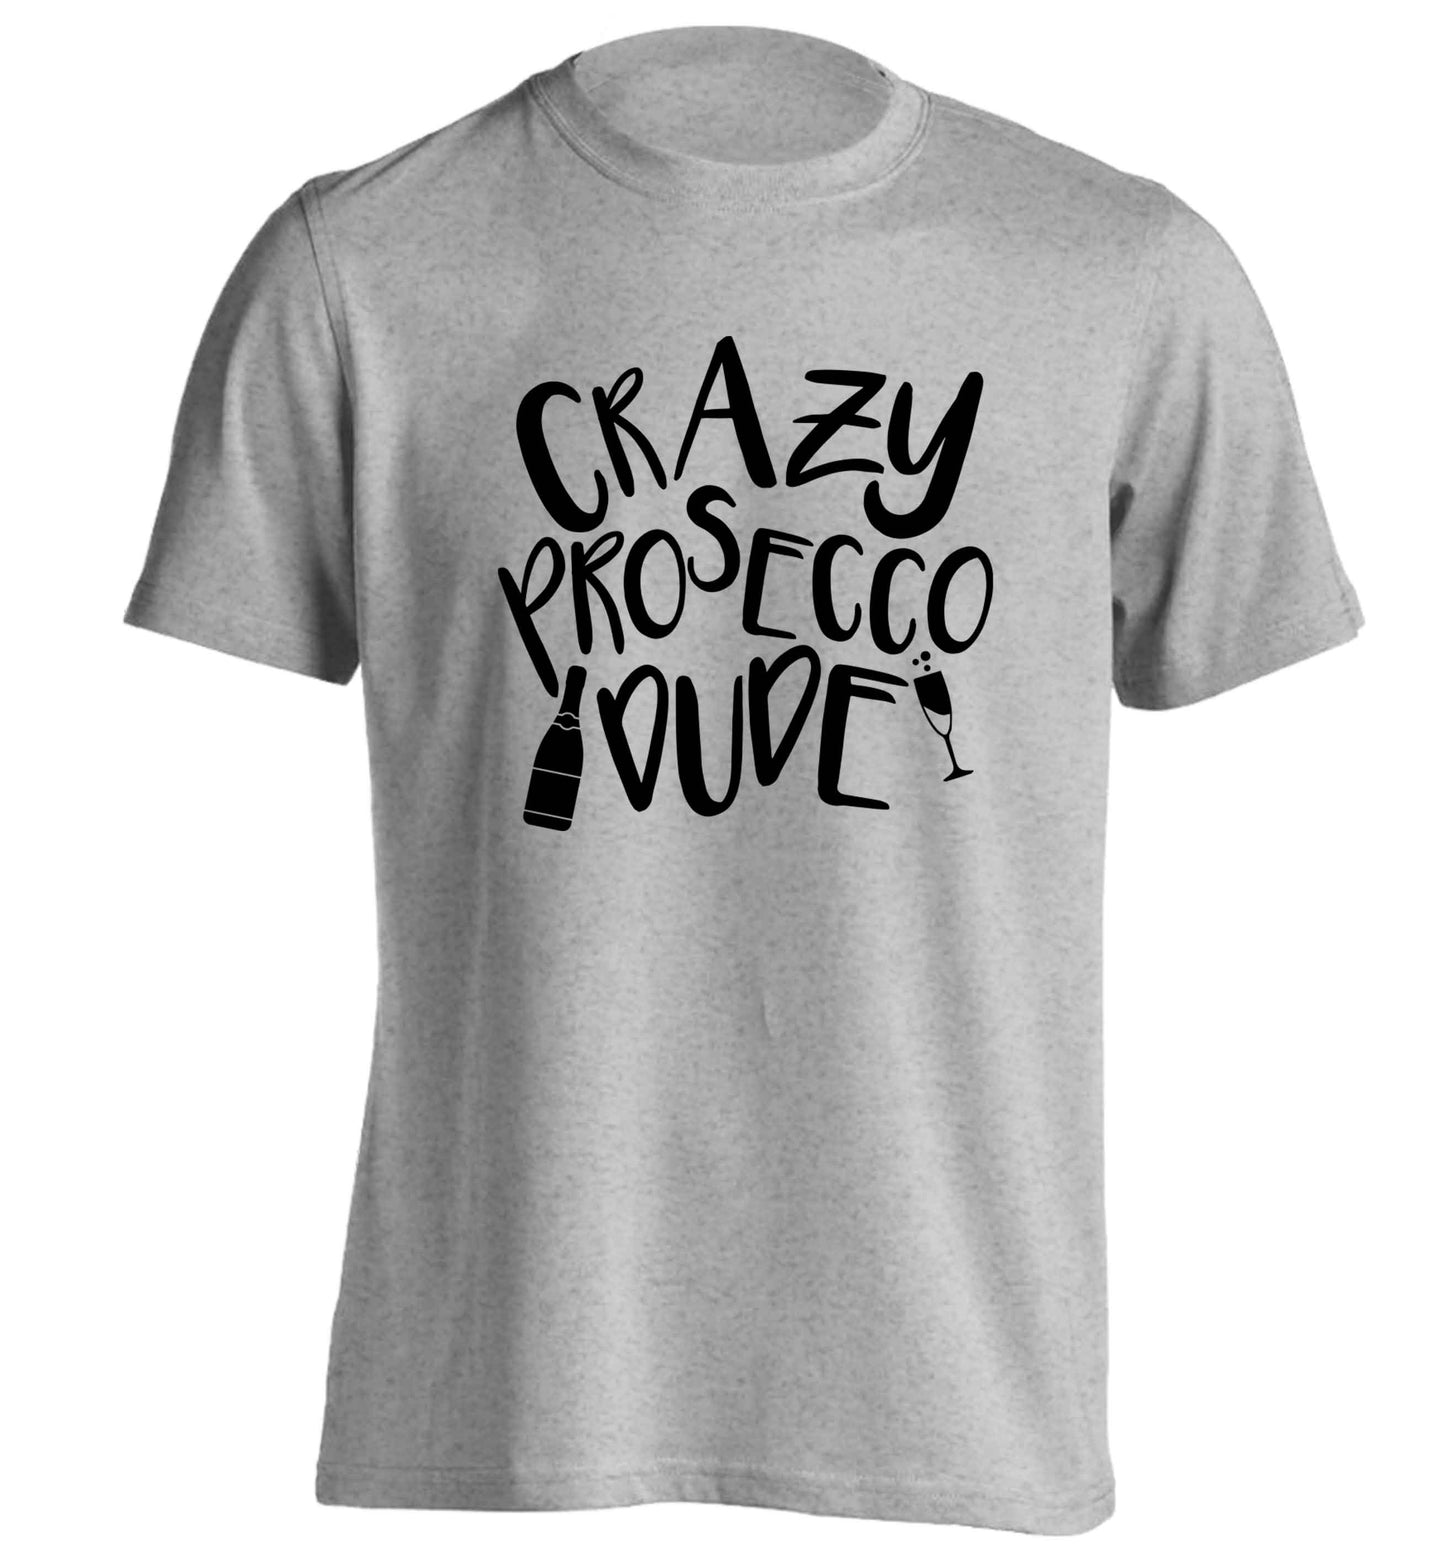 Crazy prosecco dude adults unisex grey Tshirt 2XL